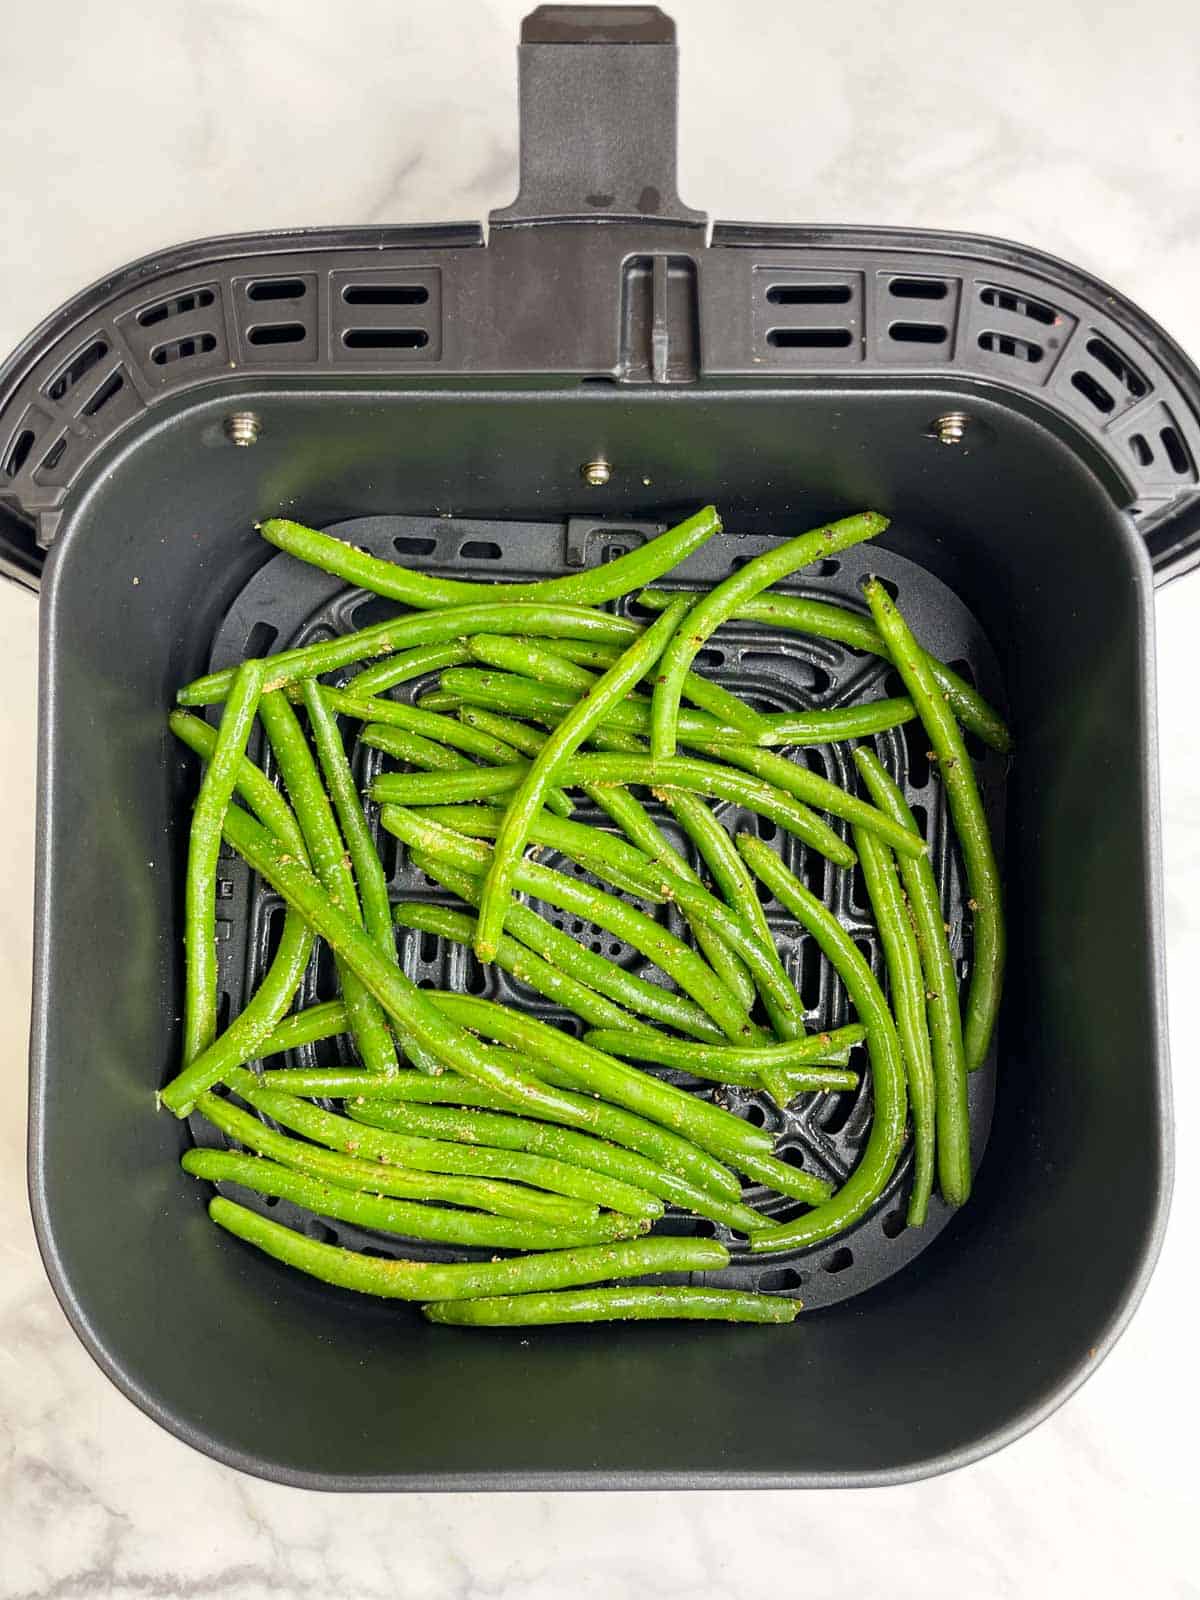 seasoned green beans in the air fryer basket